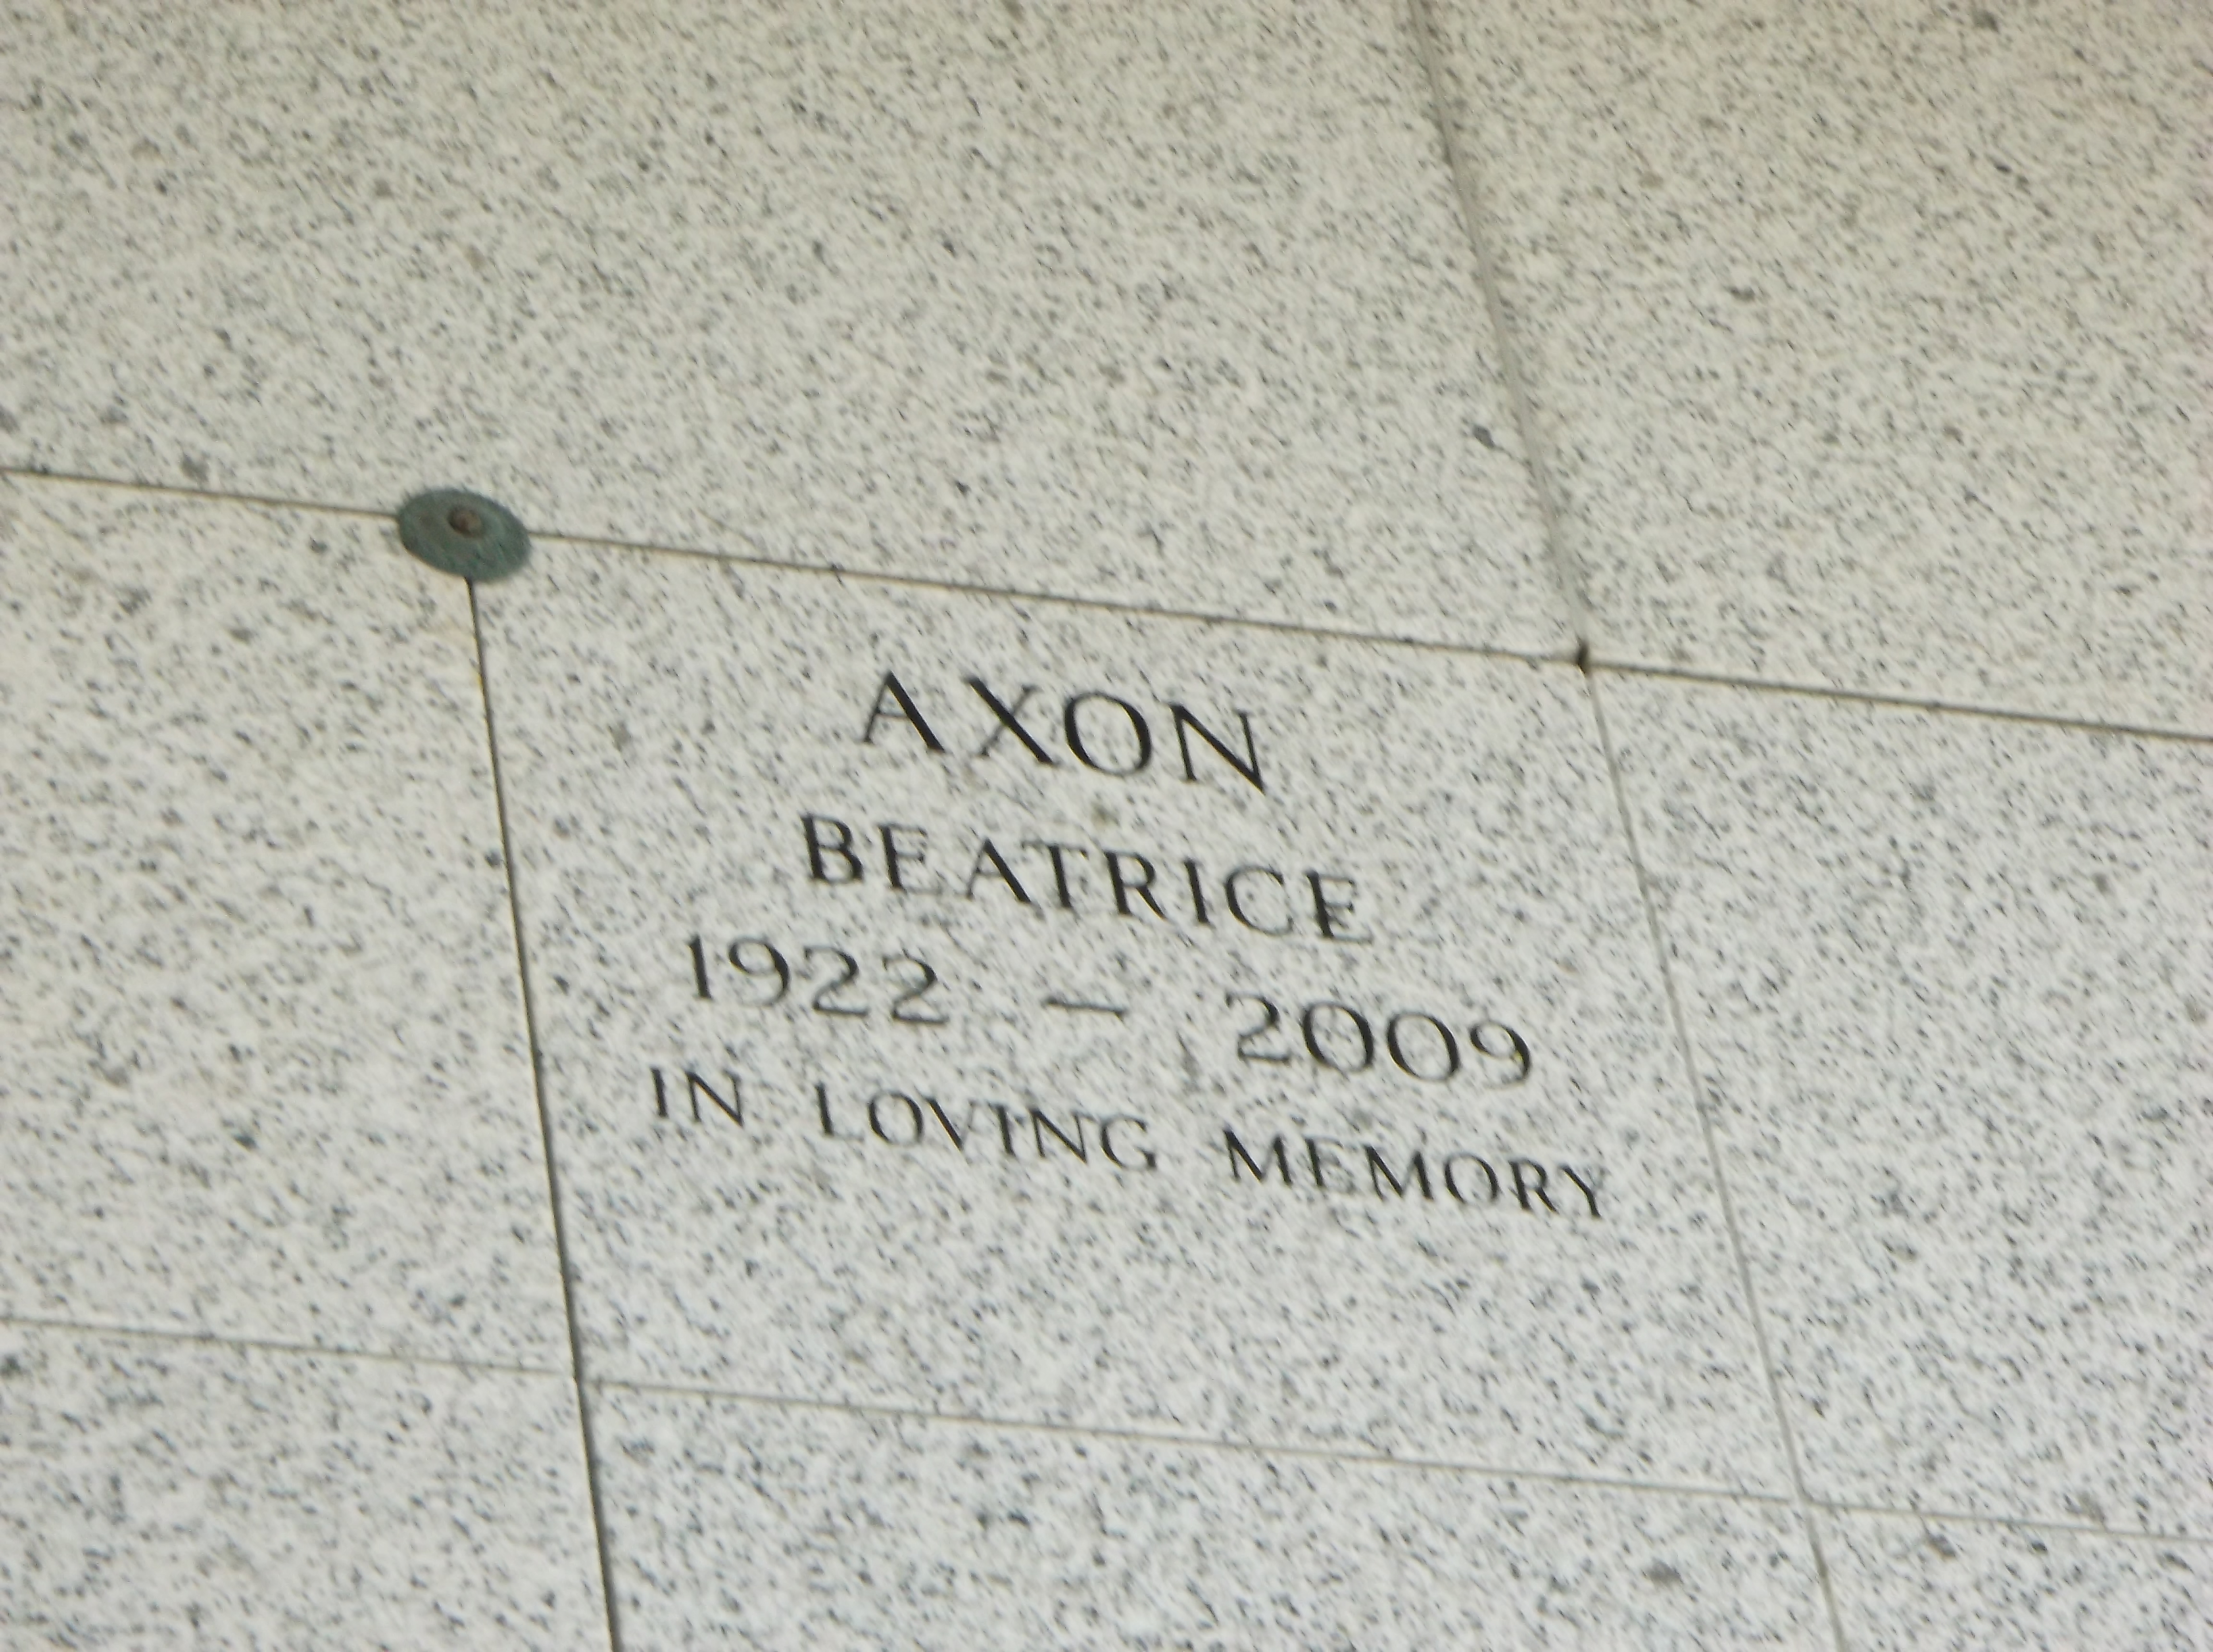 Beatrice Axon